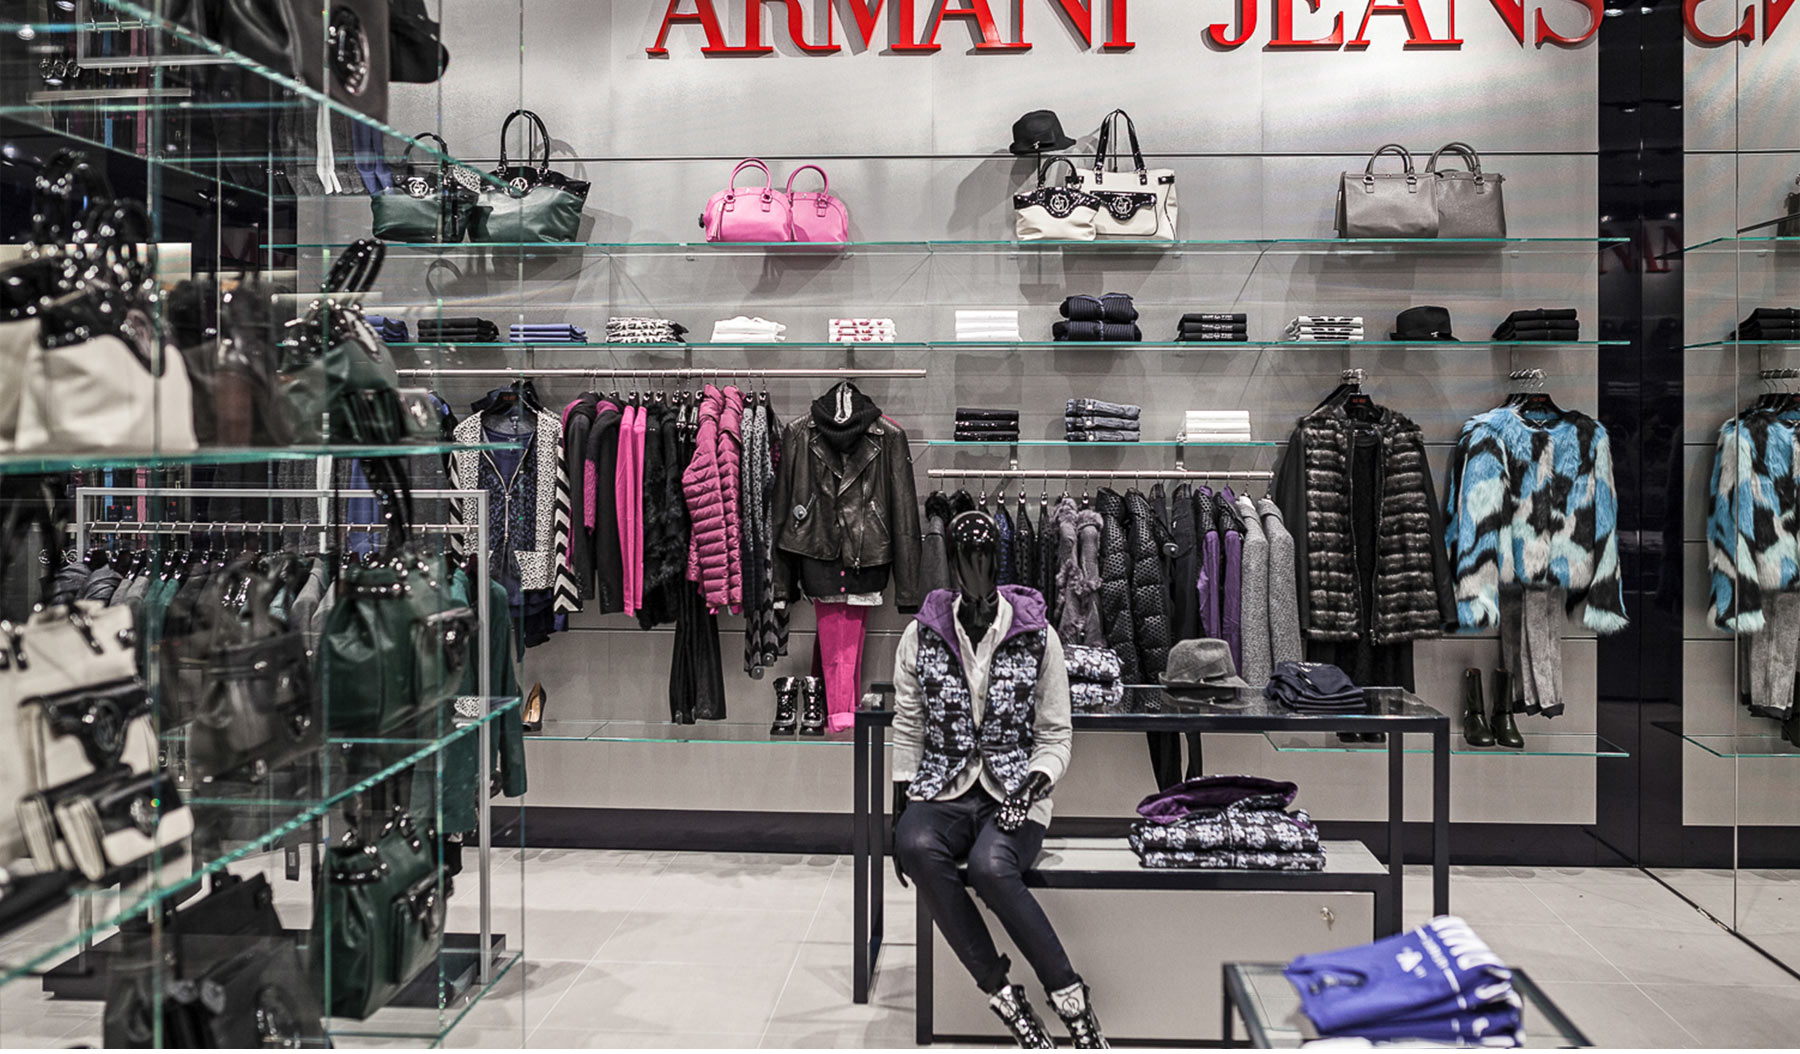 Referenzen Innenarchitektur SDW DESIGN Ladengestaltung Armani Jeans